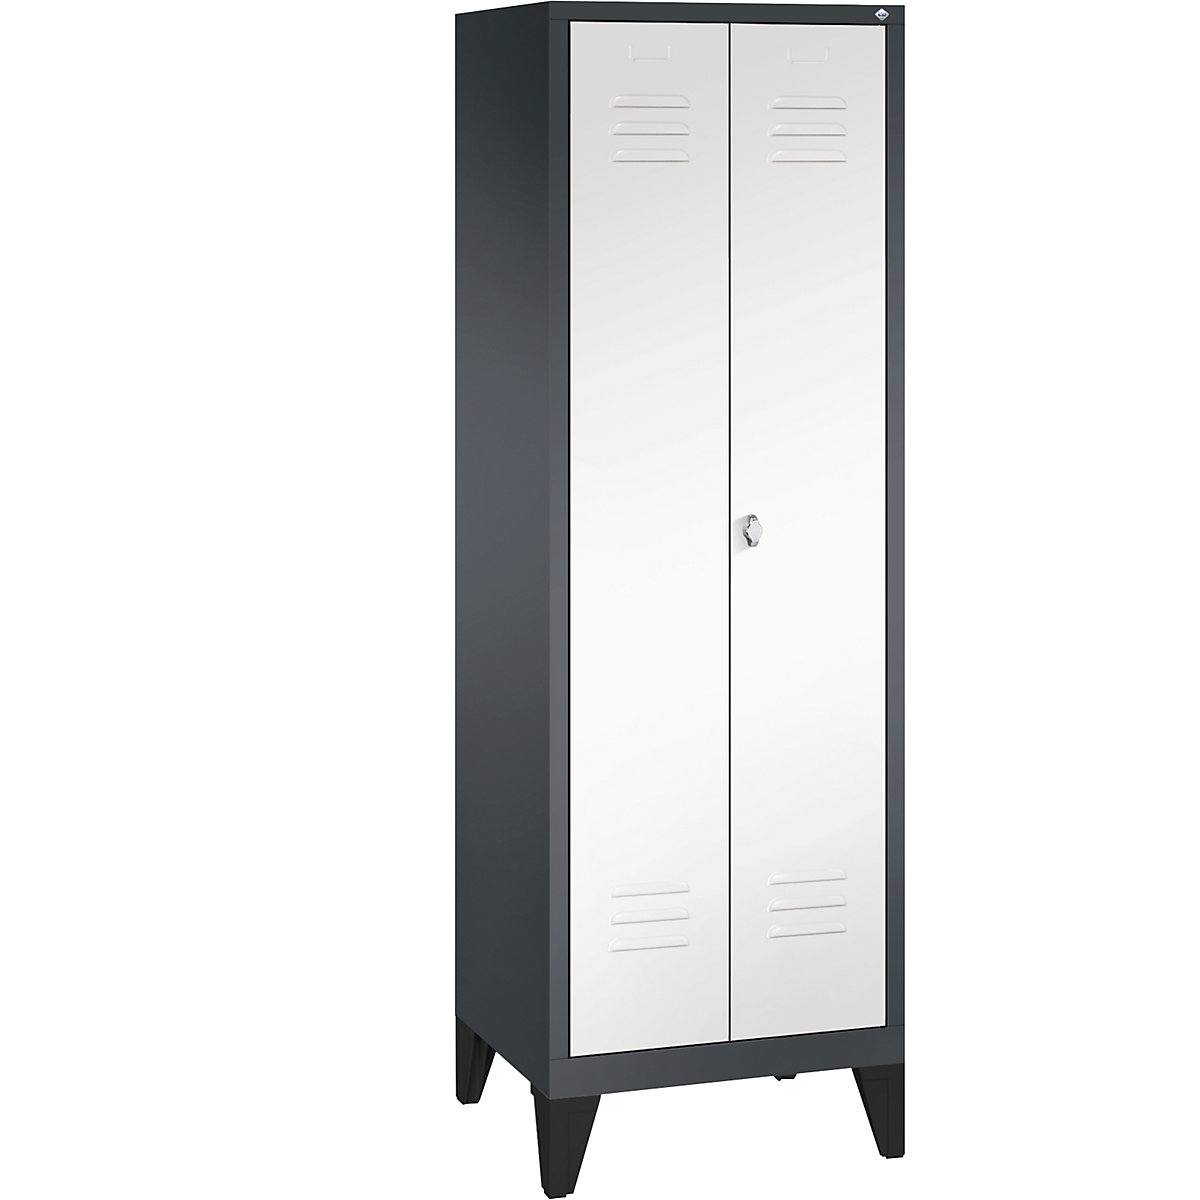 Garderobna omara CLASSIC z nogami in dvokrilnimi vrati na stik – C+P, 2 predelka, širina 300 mm/predelek, črno sive / prometno bele barve-12